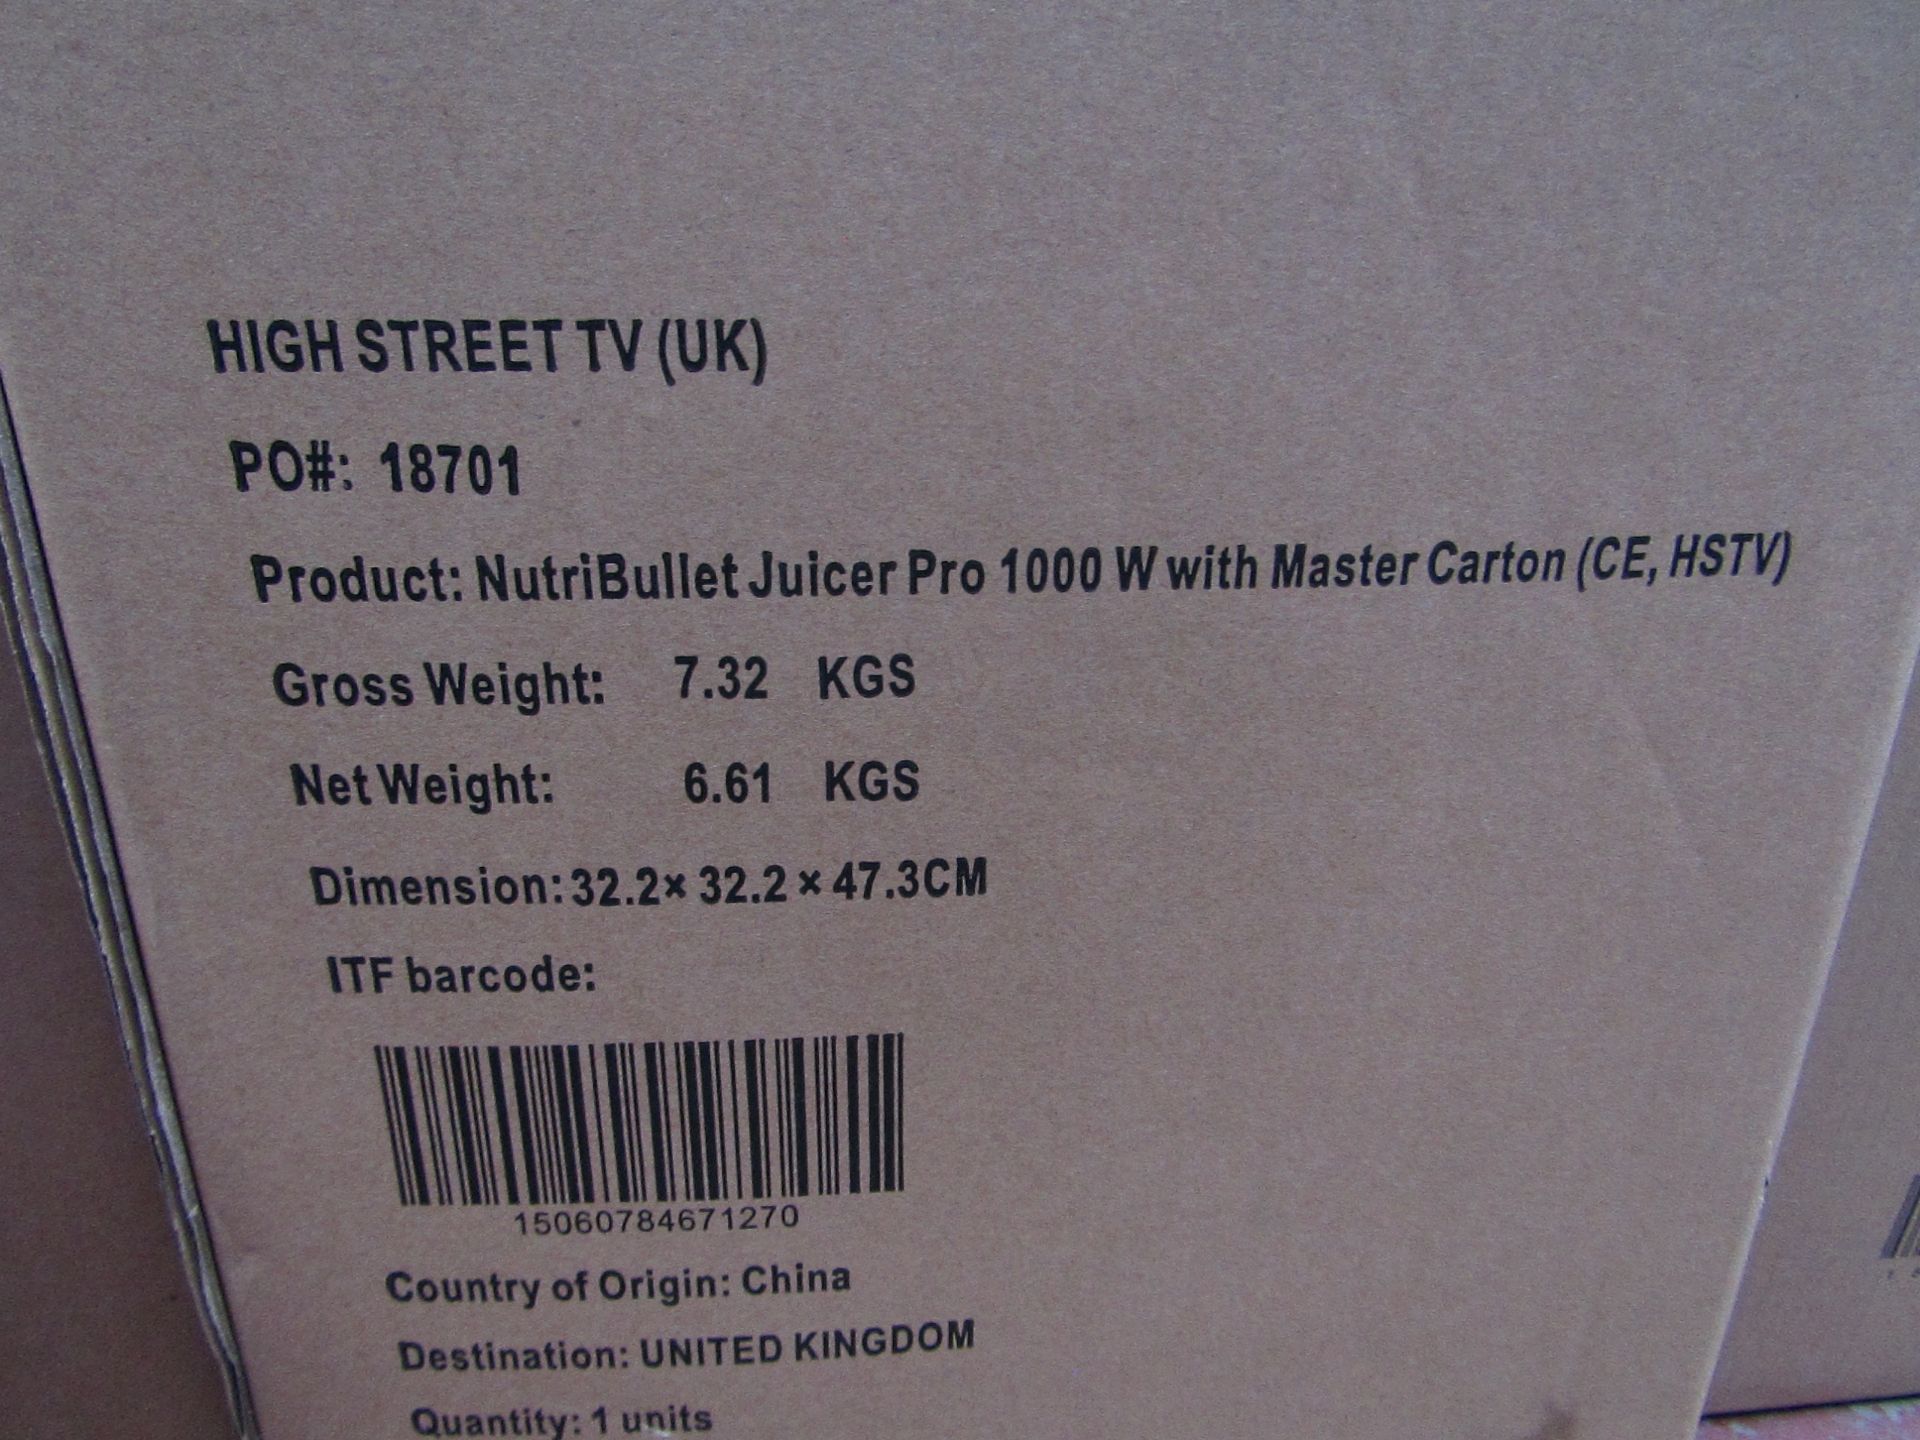 1 x NutriBullet Juicer Pro 1558 RRP £149.99 SKU HST-APG-5060784671273-B+ TOTAL RRP £149.99 This